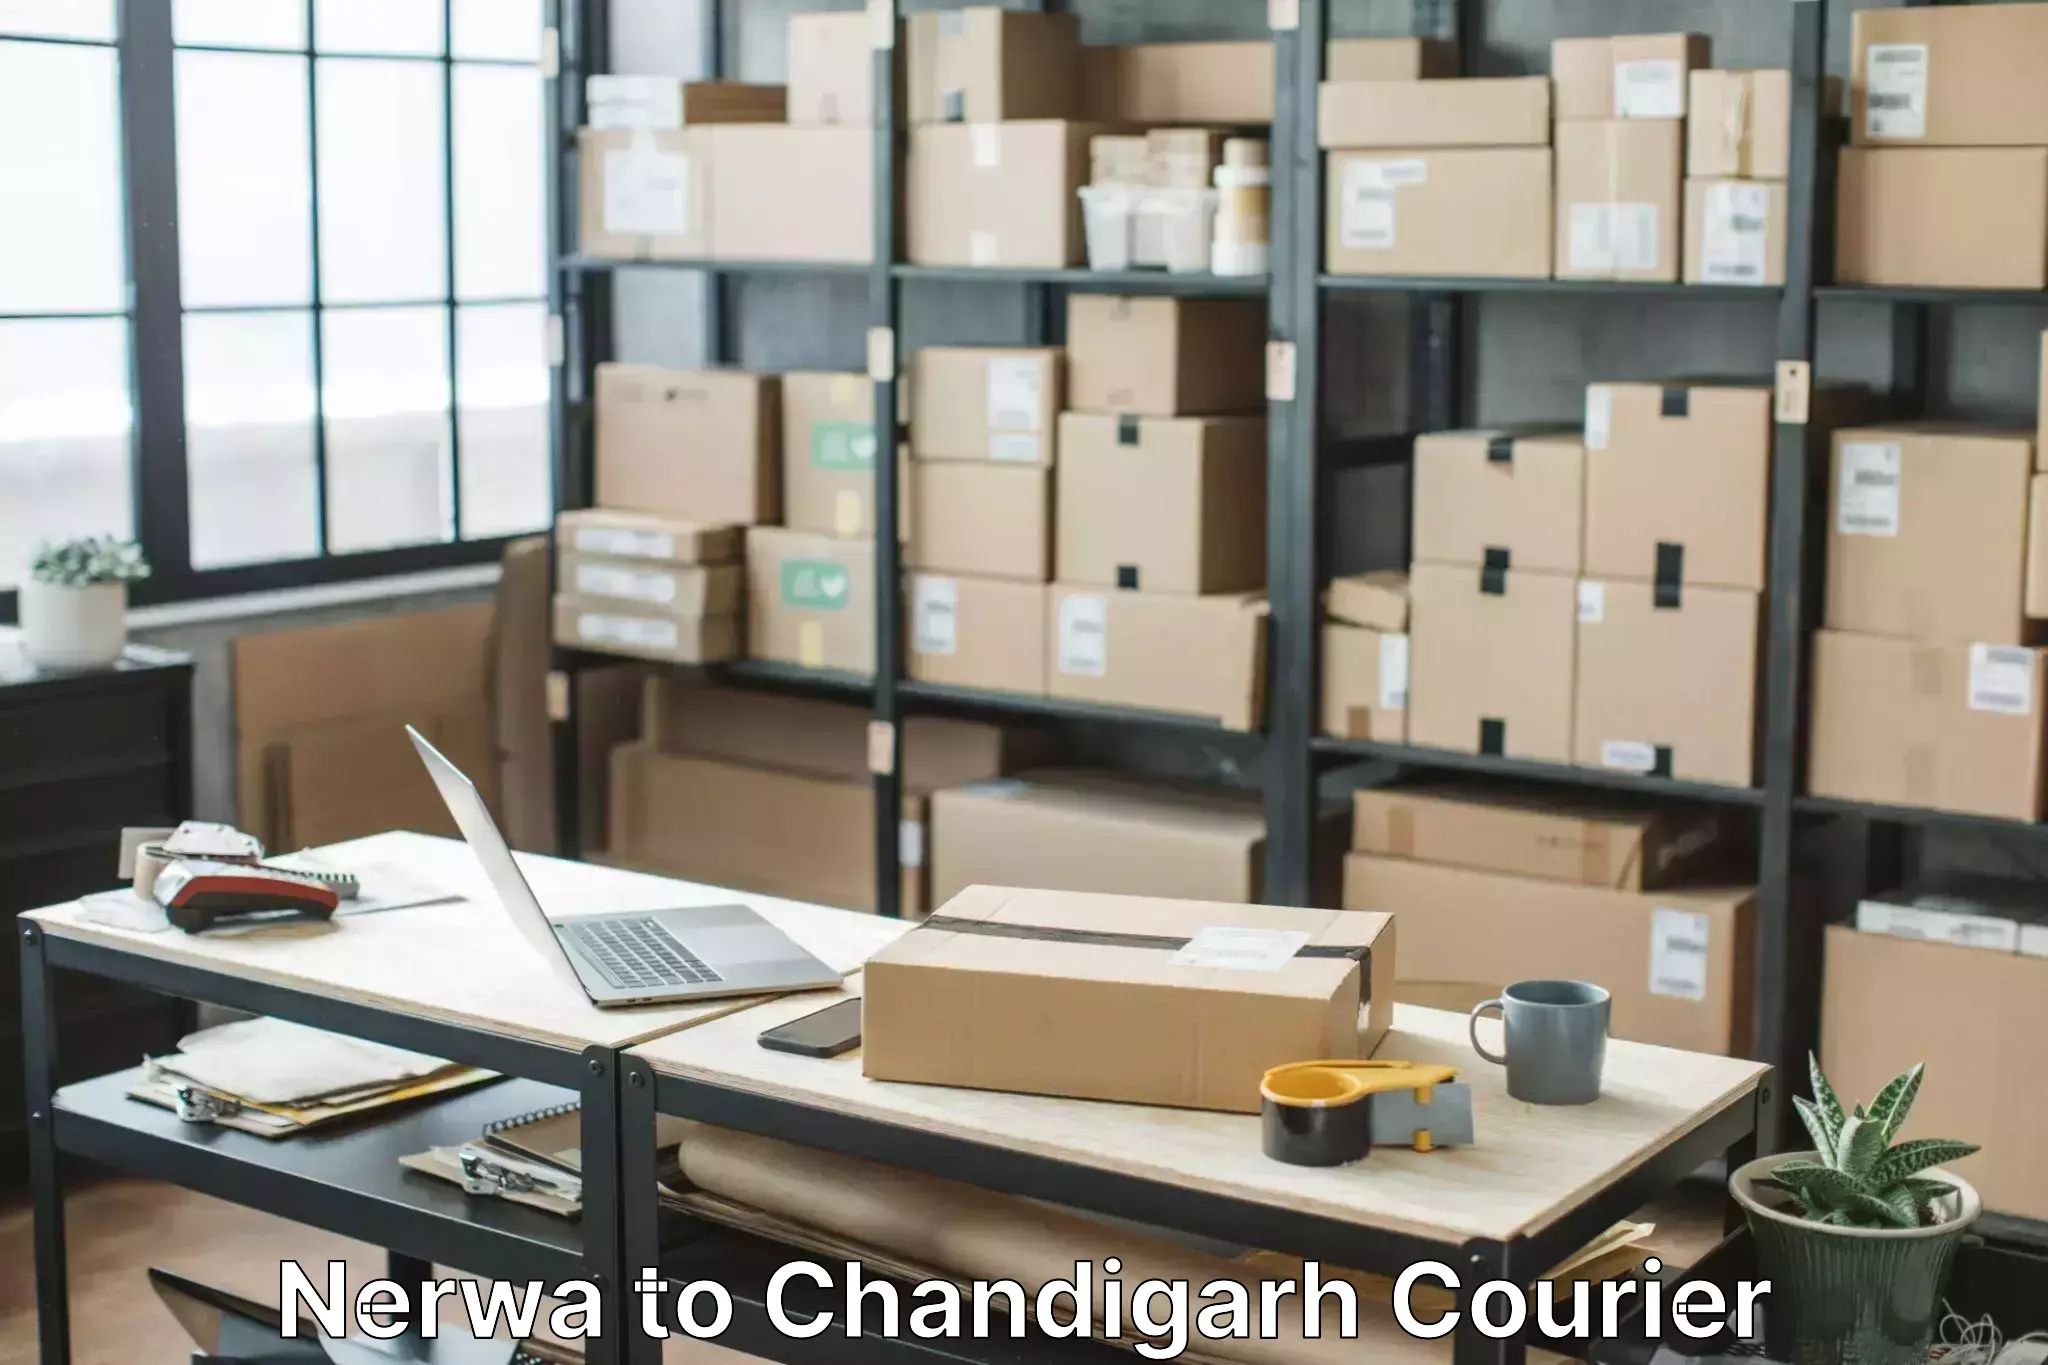 Professional moving company Nerwa to Panjab University Chandigarh